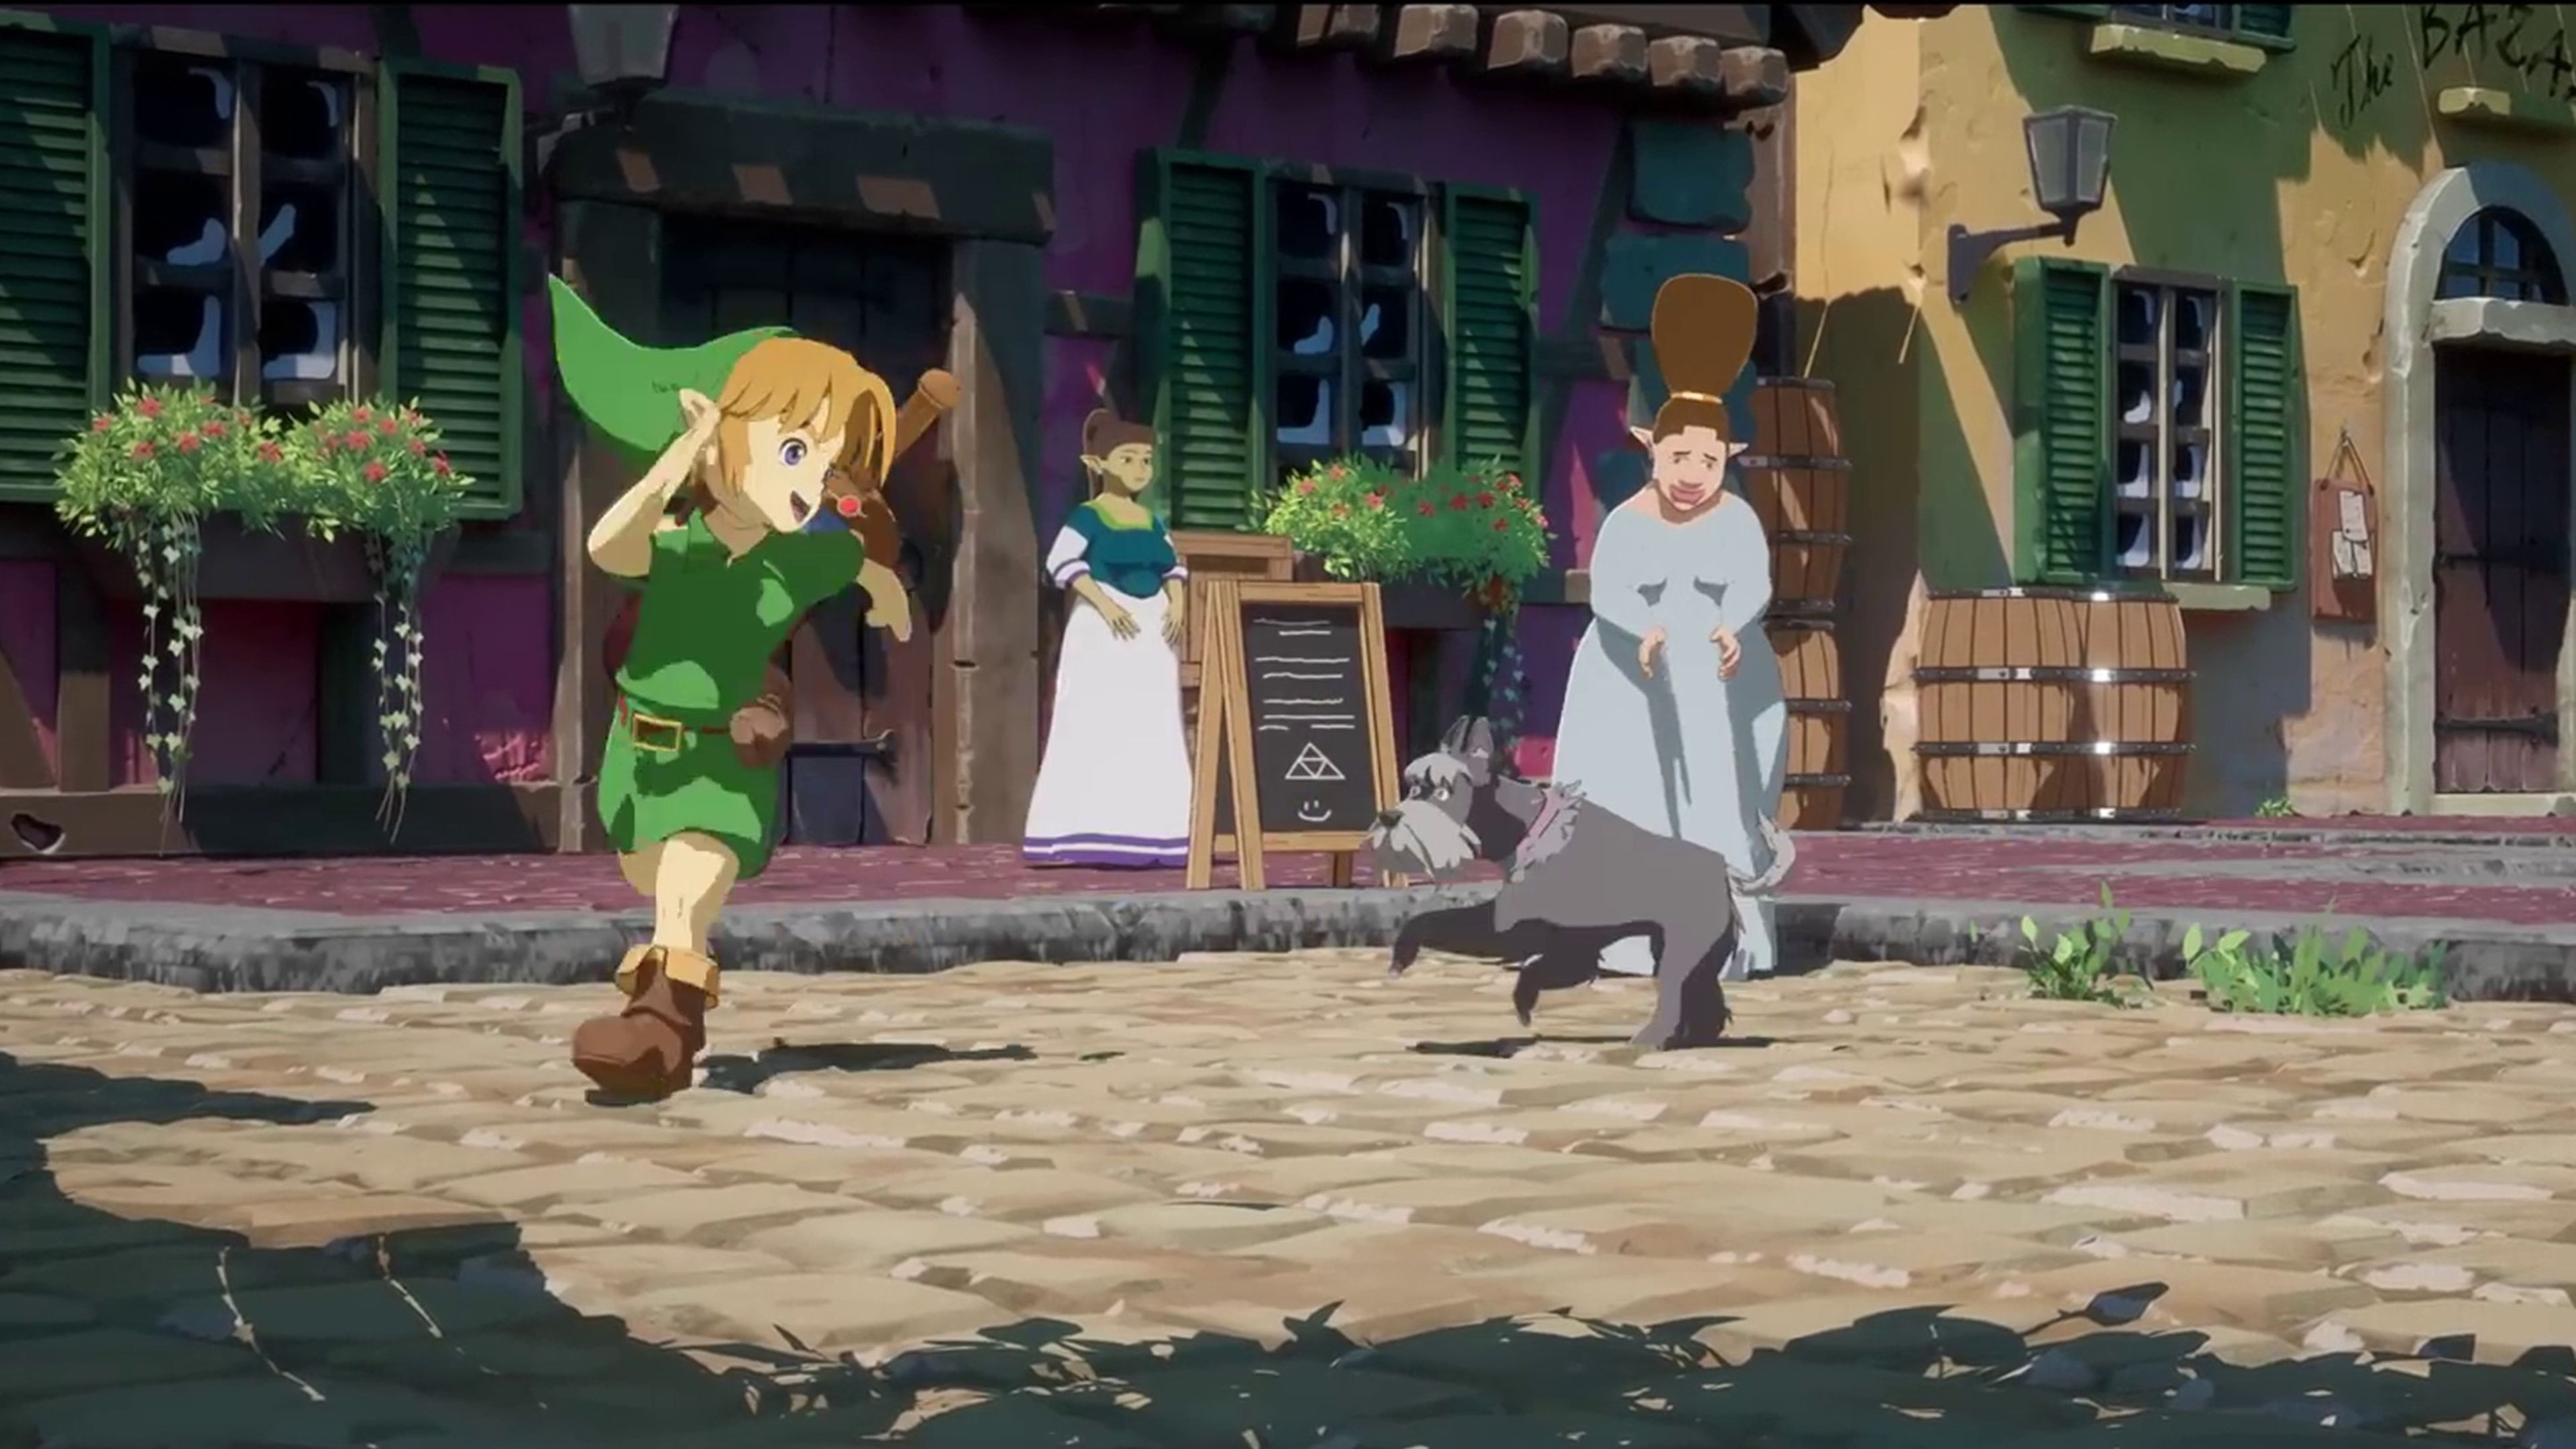 Remake de Zelda Ocarina of Time con estética de Studio Ghibli en Unreal Engine 5